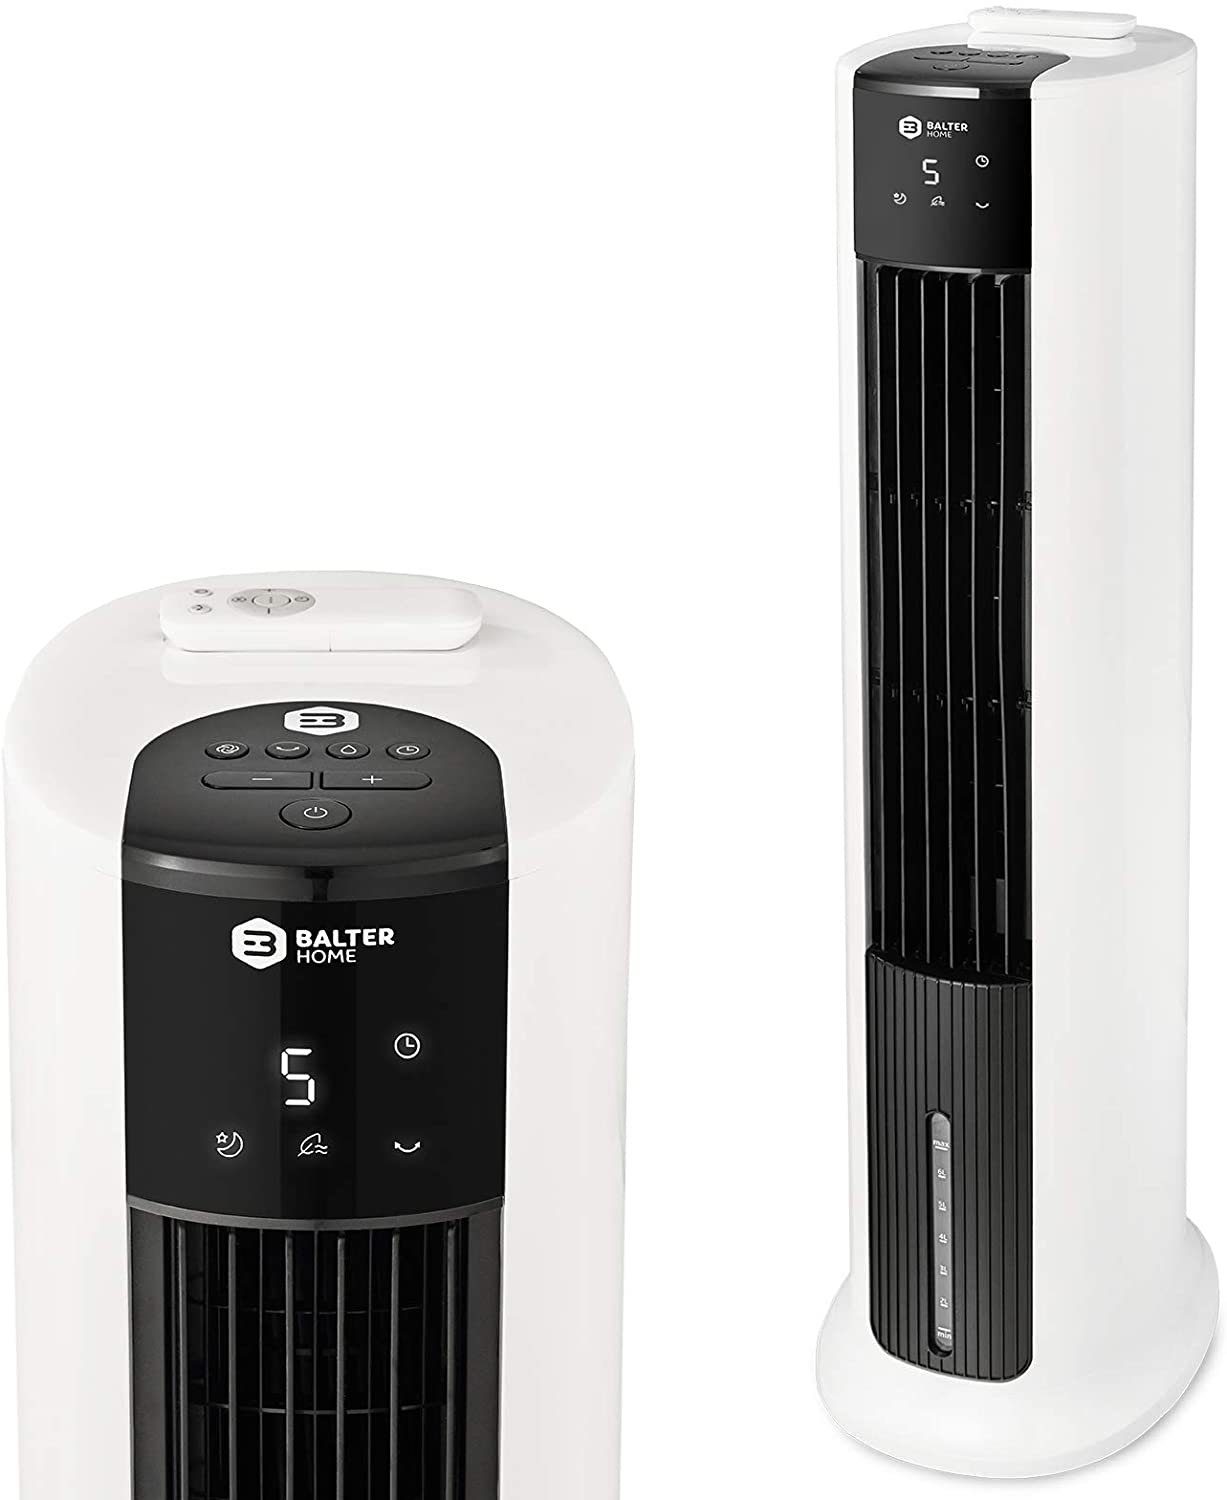 Turmventilator VT-05, 4in1 Mobile Klimaanlage, Turmventilator, Ventilator  mit Wasserkühlung, Klimagerät, Luftkühler, Luftbefeuchter, Luftreiniger,  Fernbedienung, Timer, 7L, 65 Watt, leise